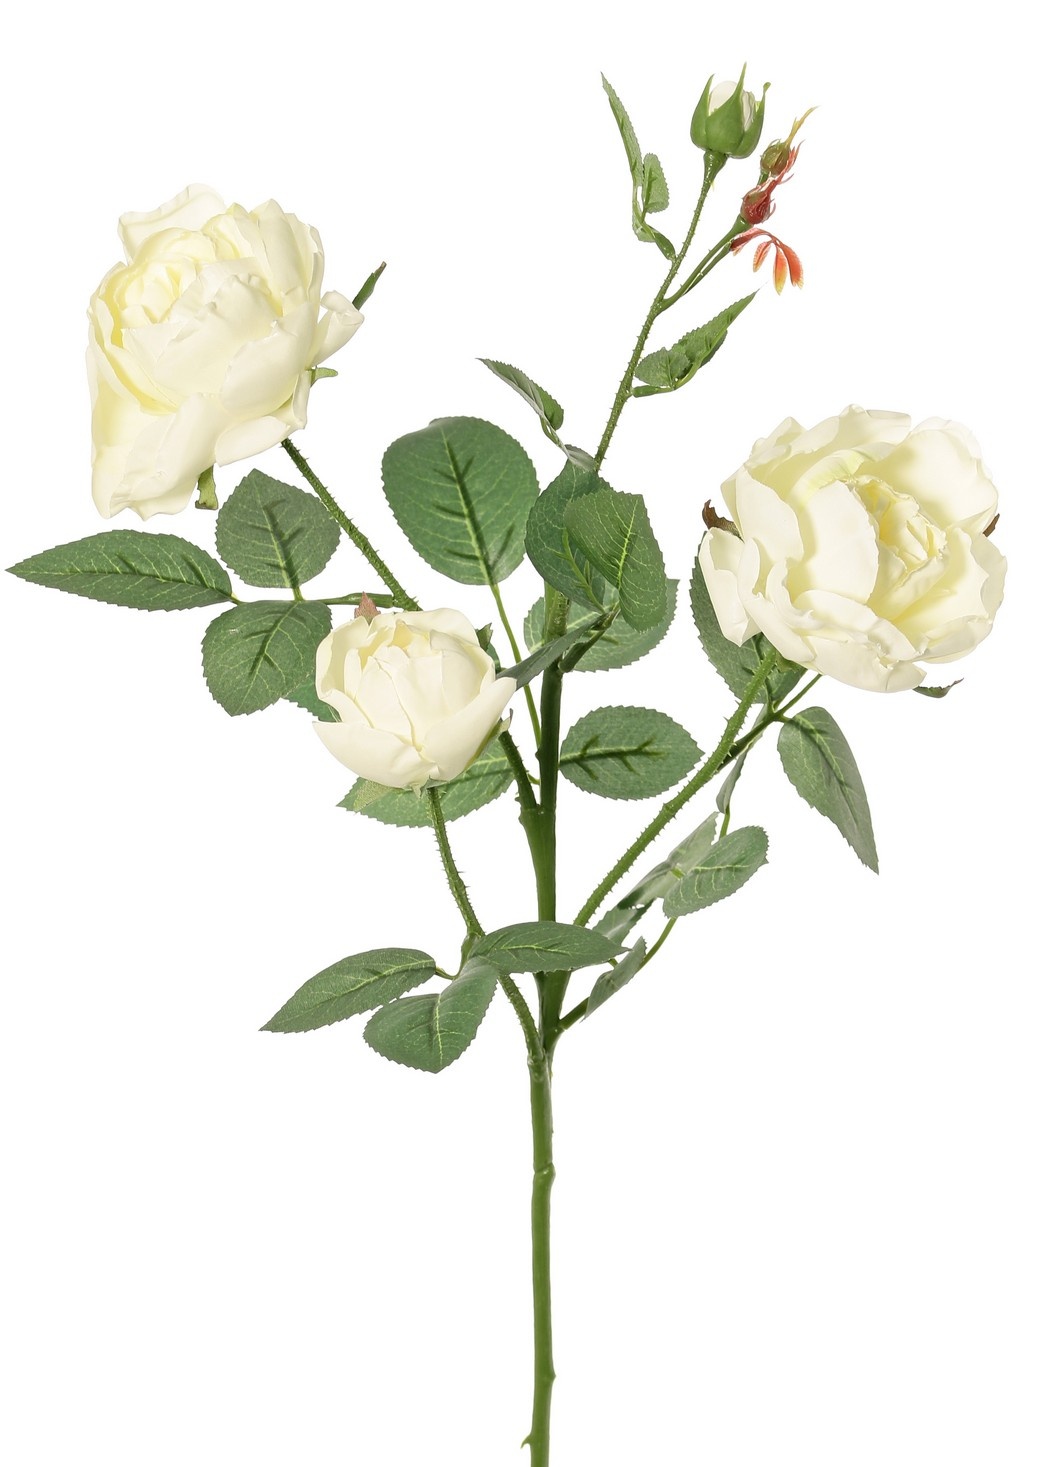 Roos (Rosa) 'Ariana', 4 vertakkingen, met 3 bloemen, 1 bloemknop & 2 knopjes, 31 blad, 73 cm